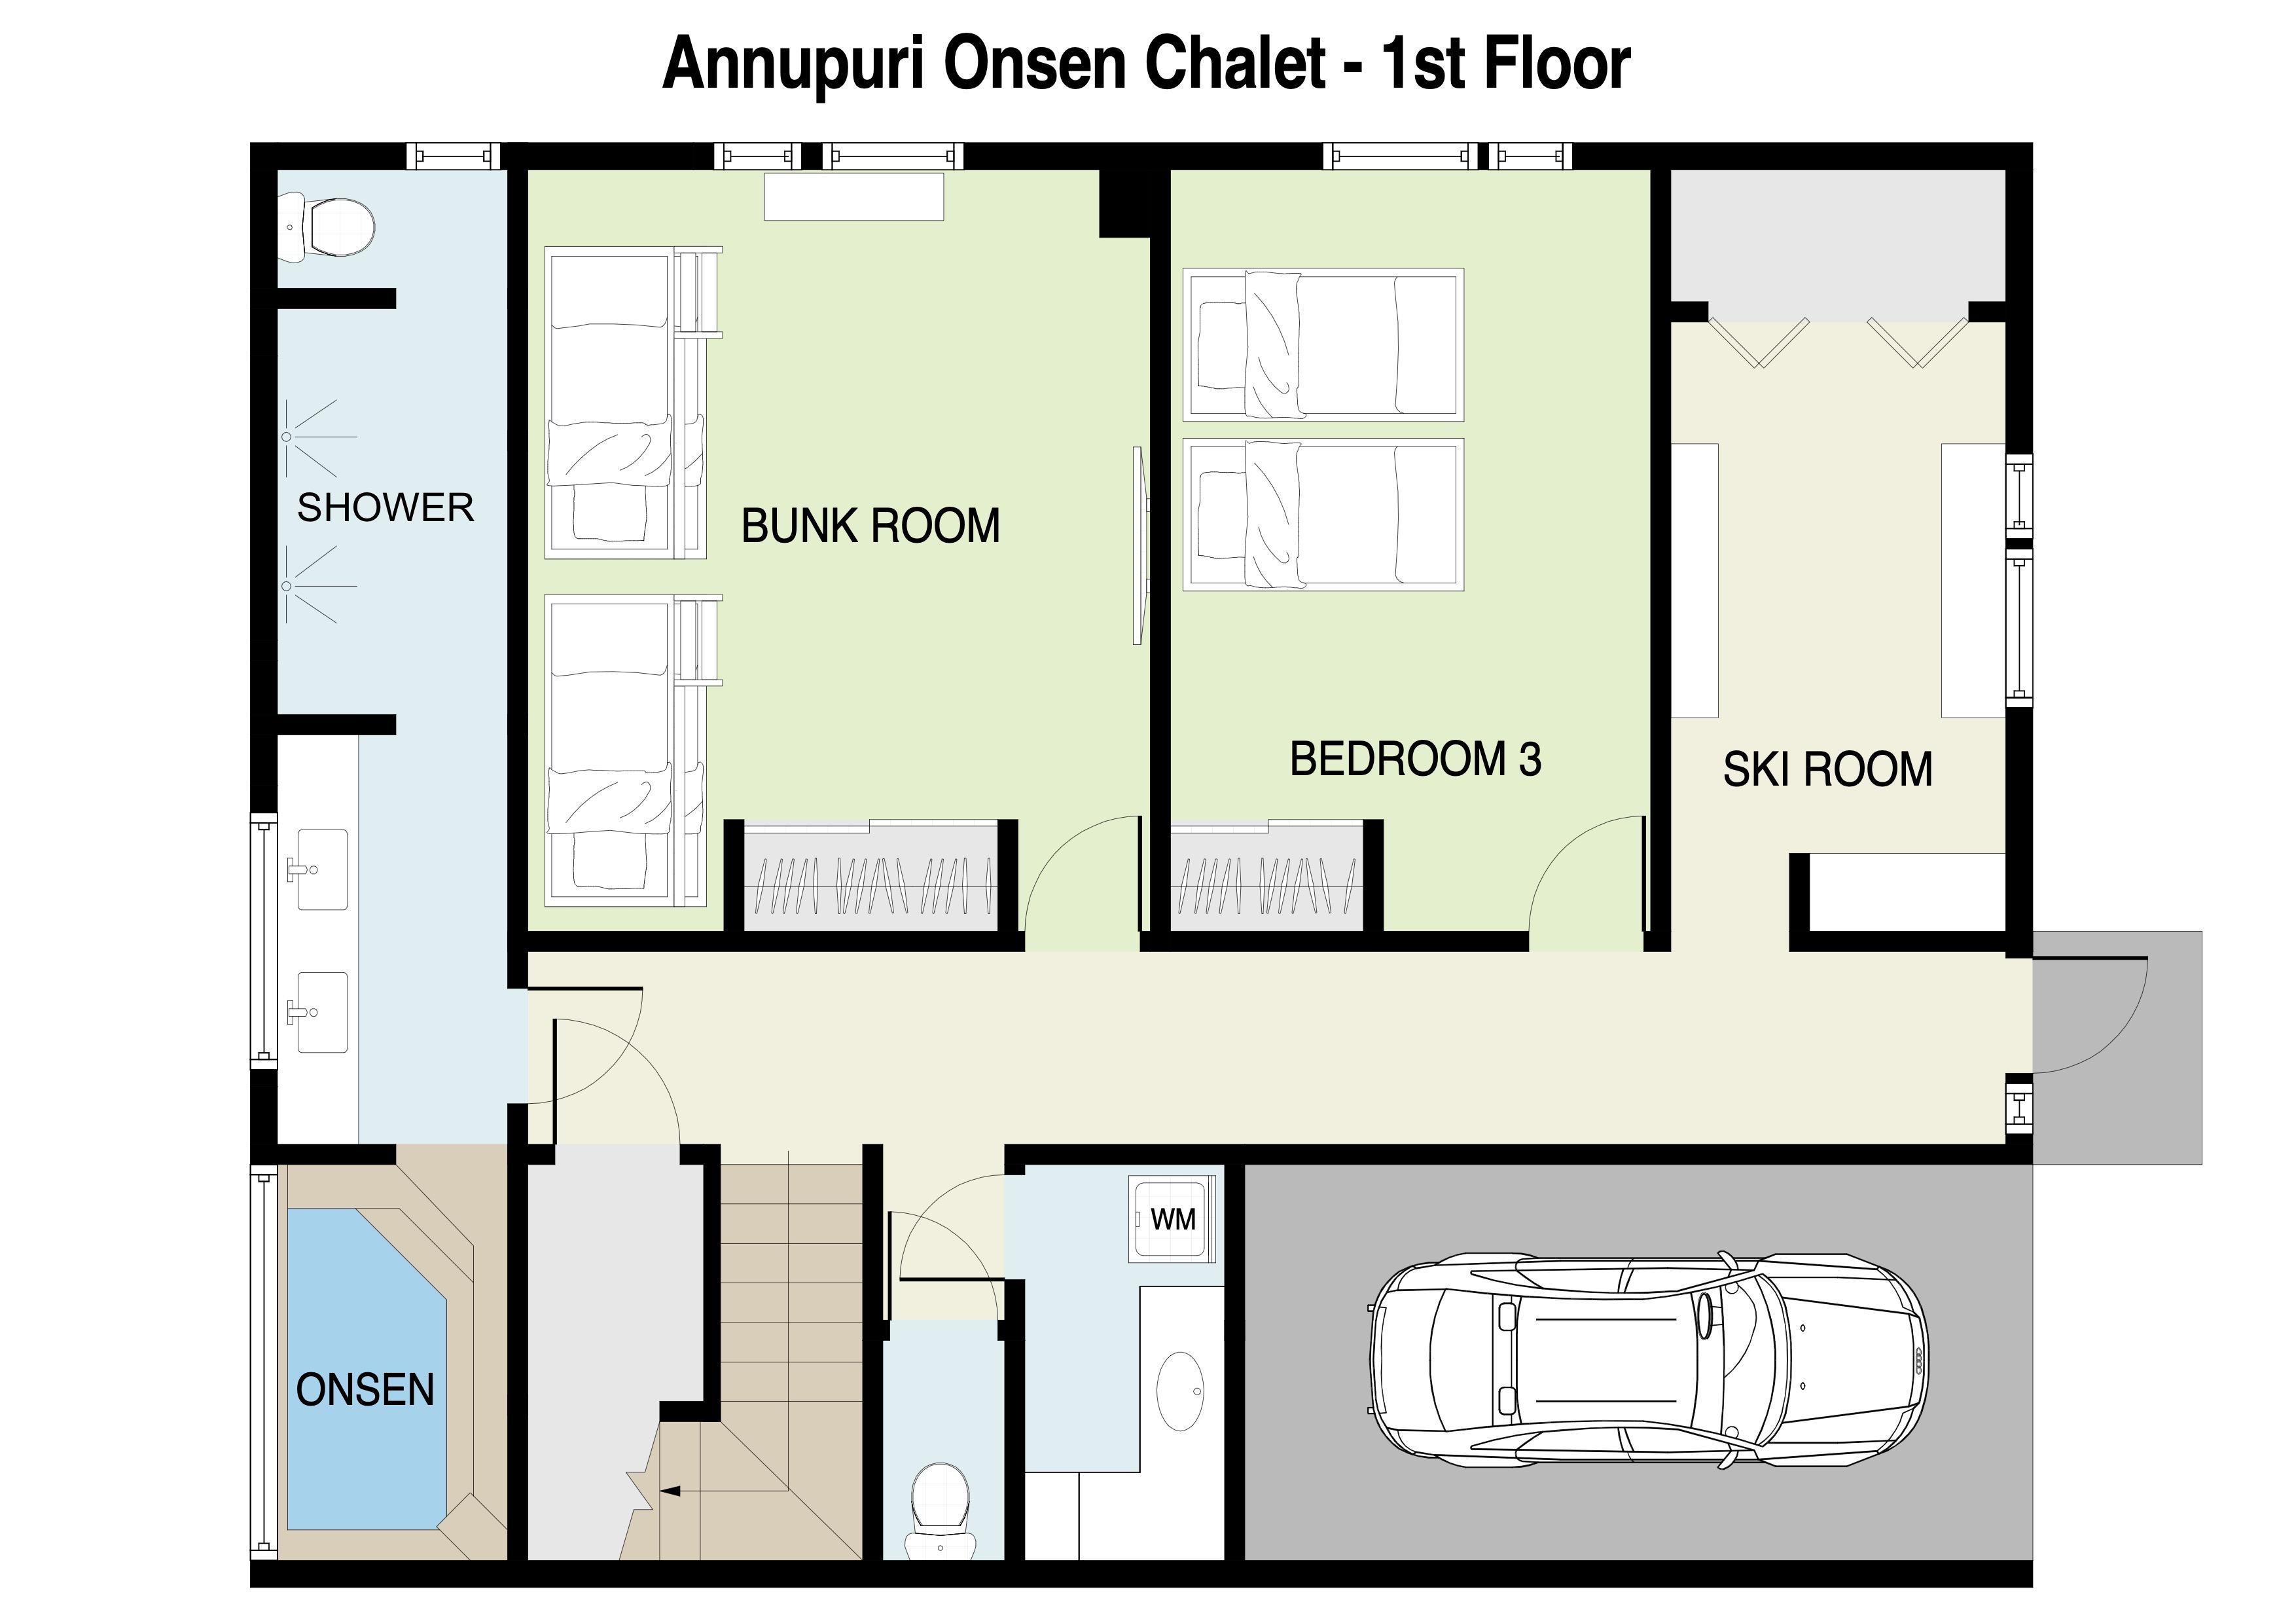 Annupuri Onsen Chalet 1st floor plan